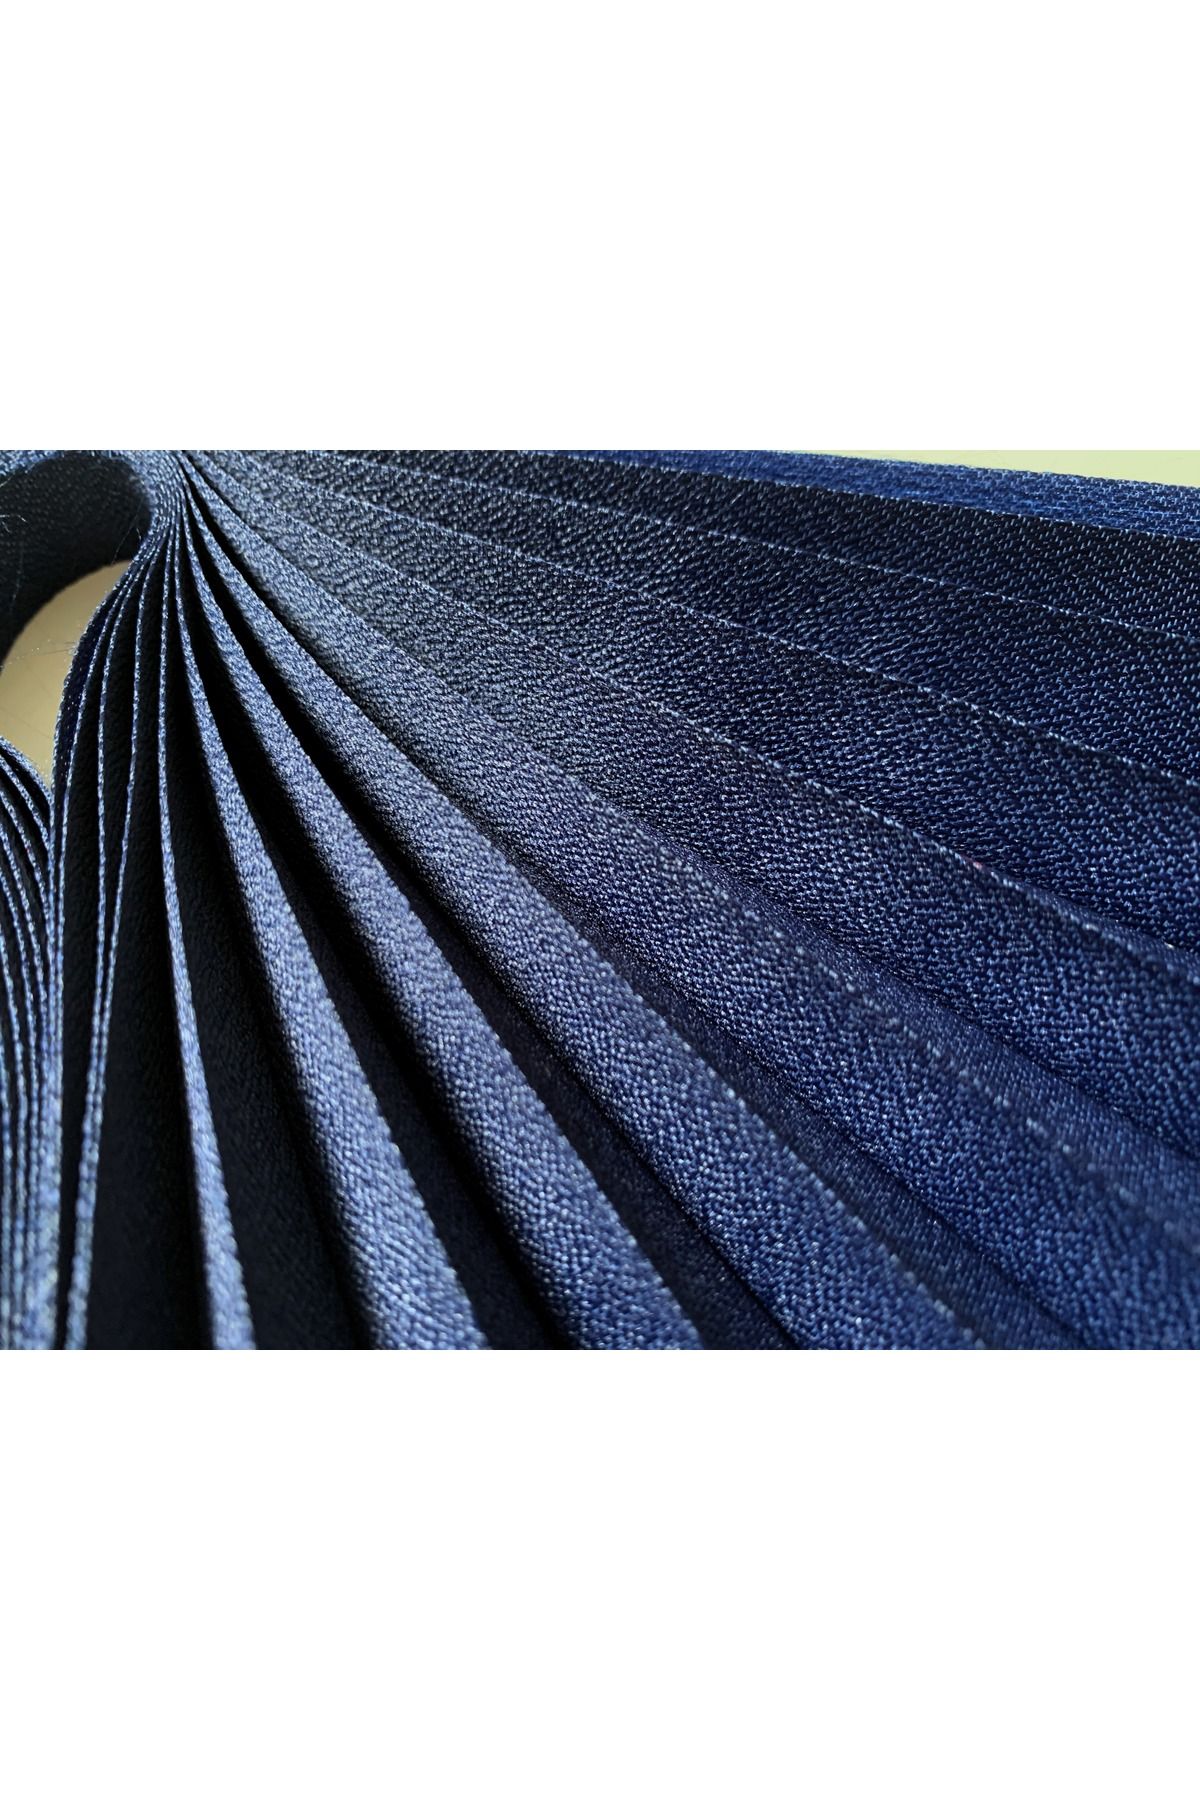 Persis Pliper Lacivert - Eni Geniş Ölçü - Plise Cam Balkon Perdesi Yapışkanlı 3400014